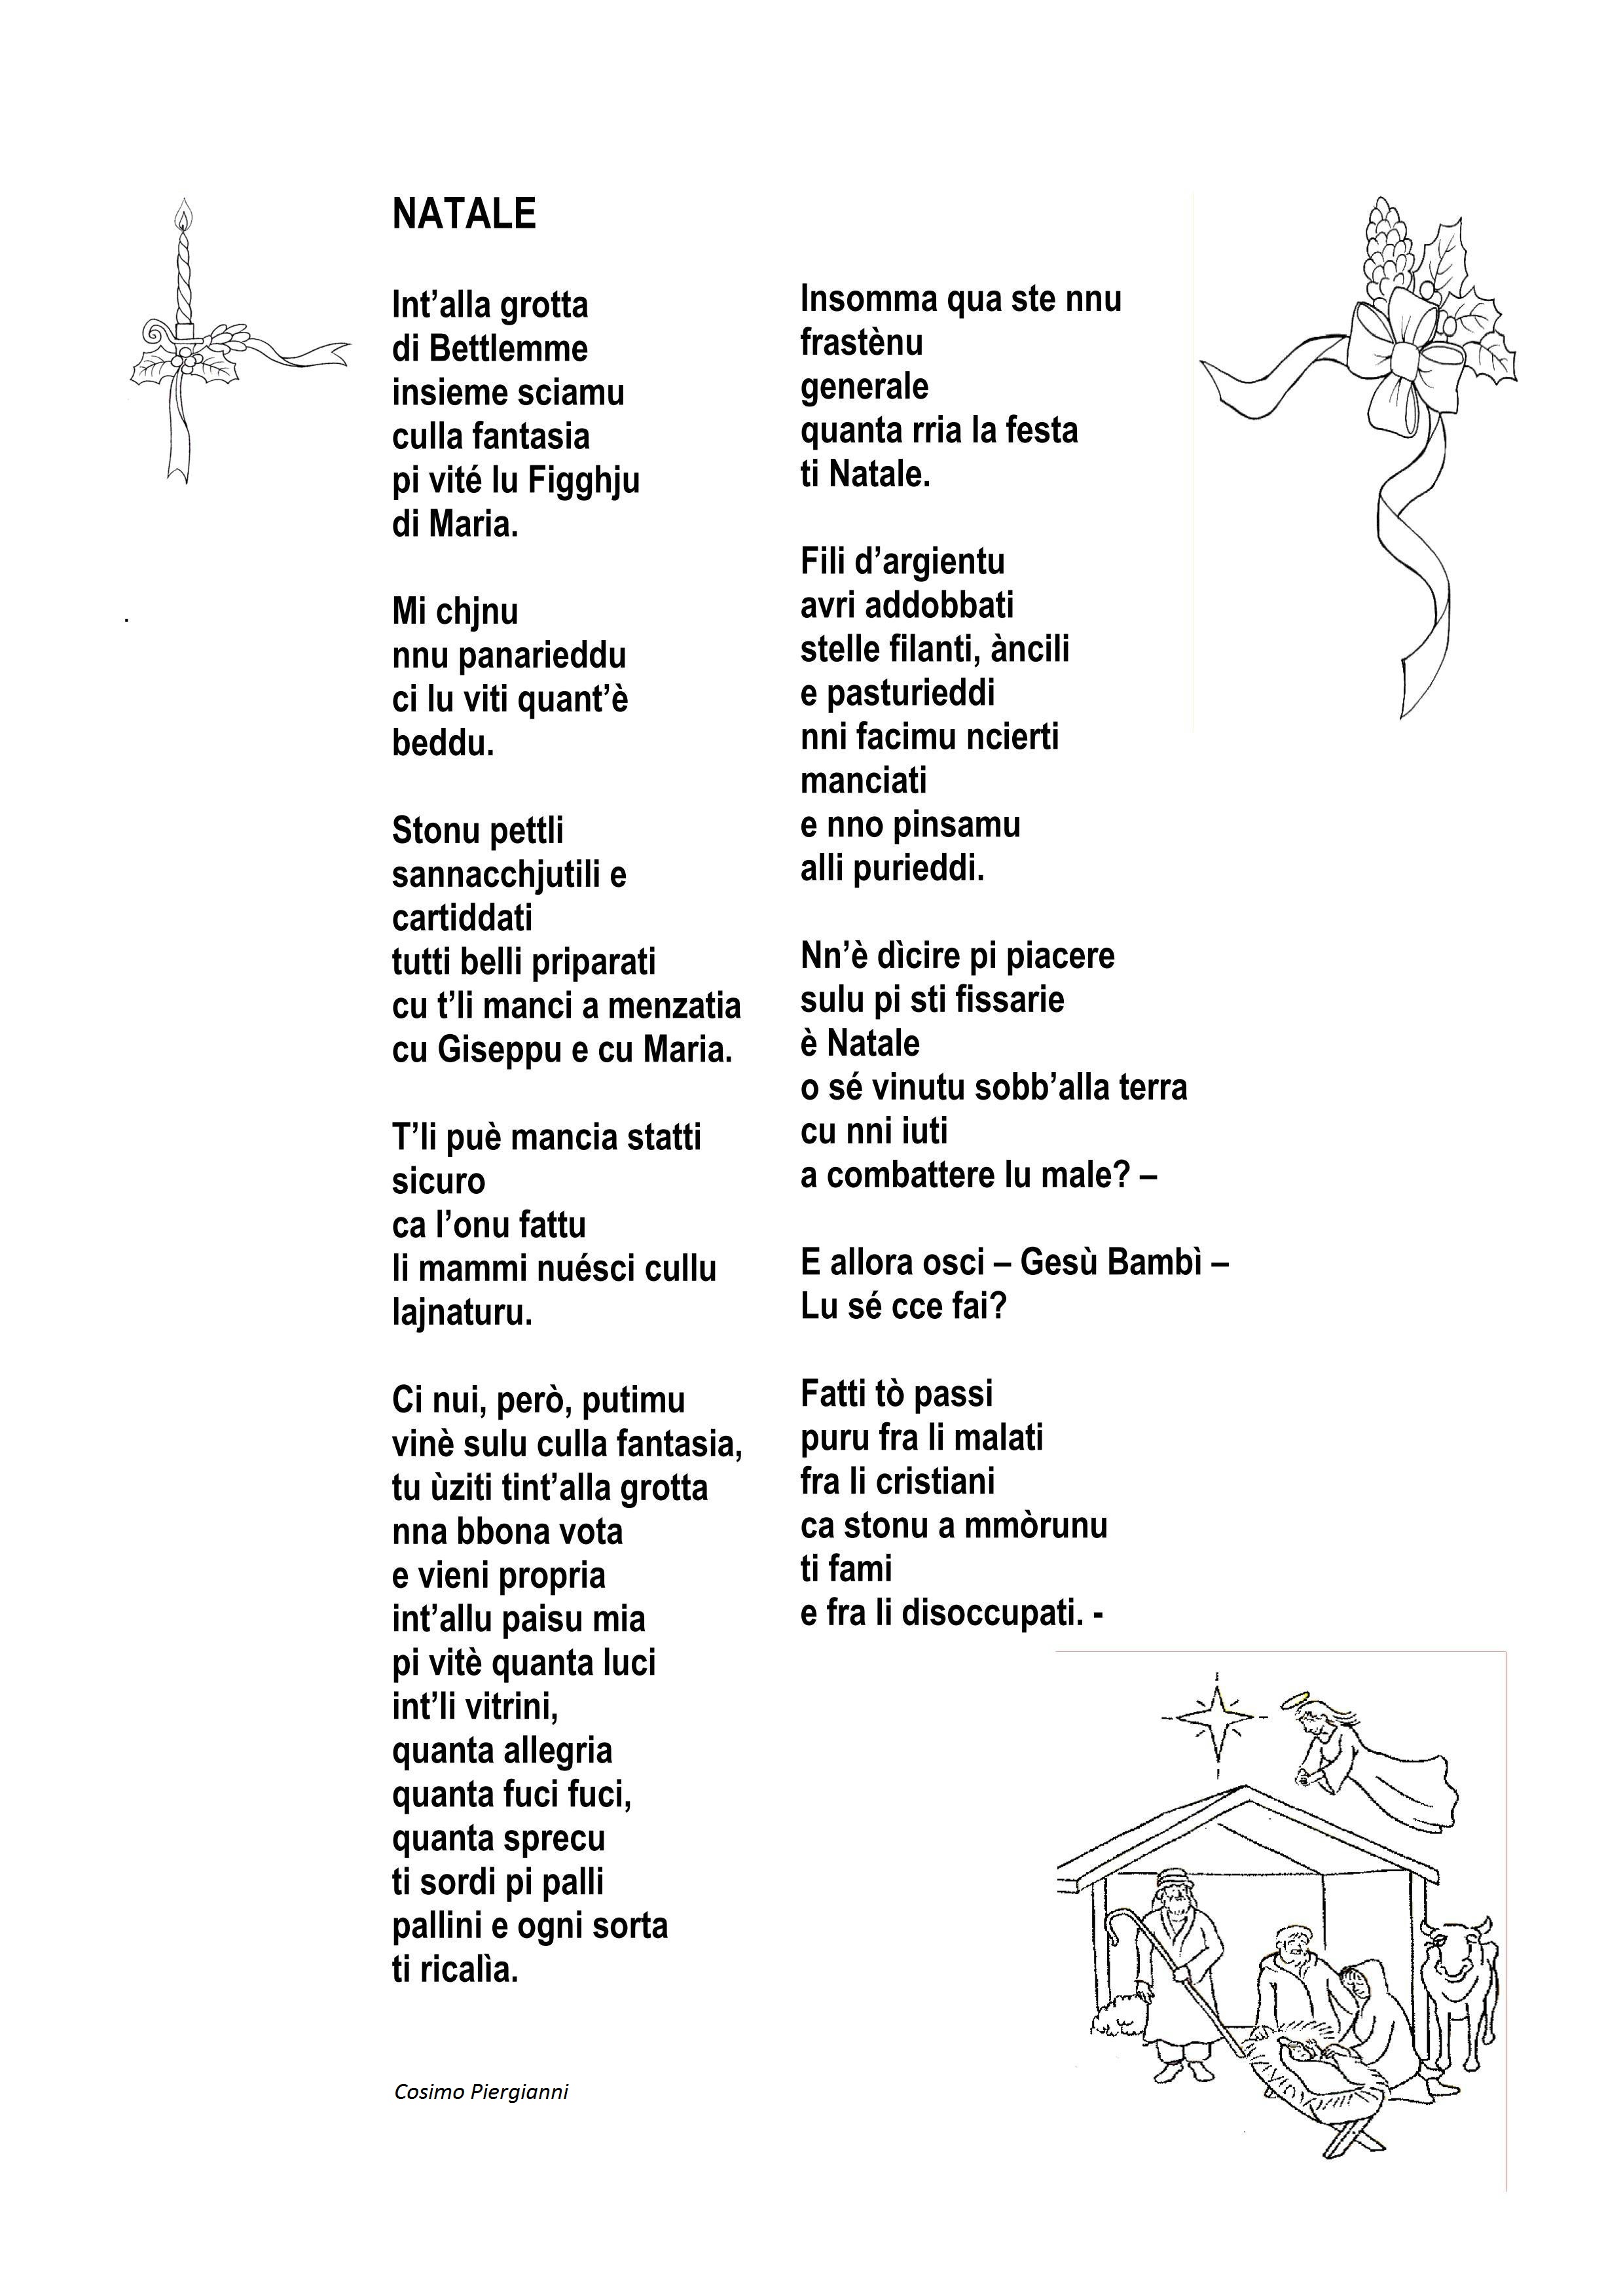 Poesie Di Natale In Dialetto Tarantino.Antologia Di Poesie Dialettali Per Natale Grottagliesita Blog